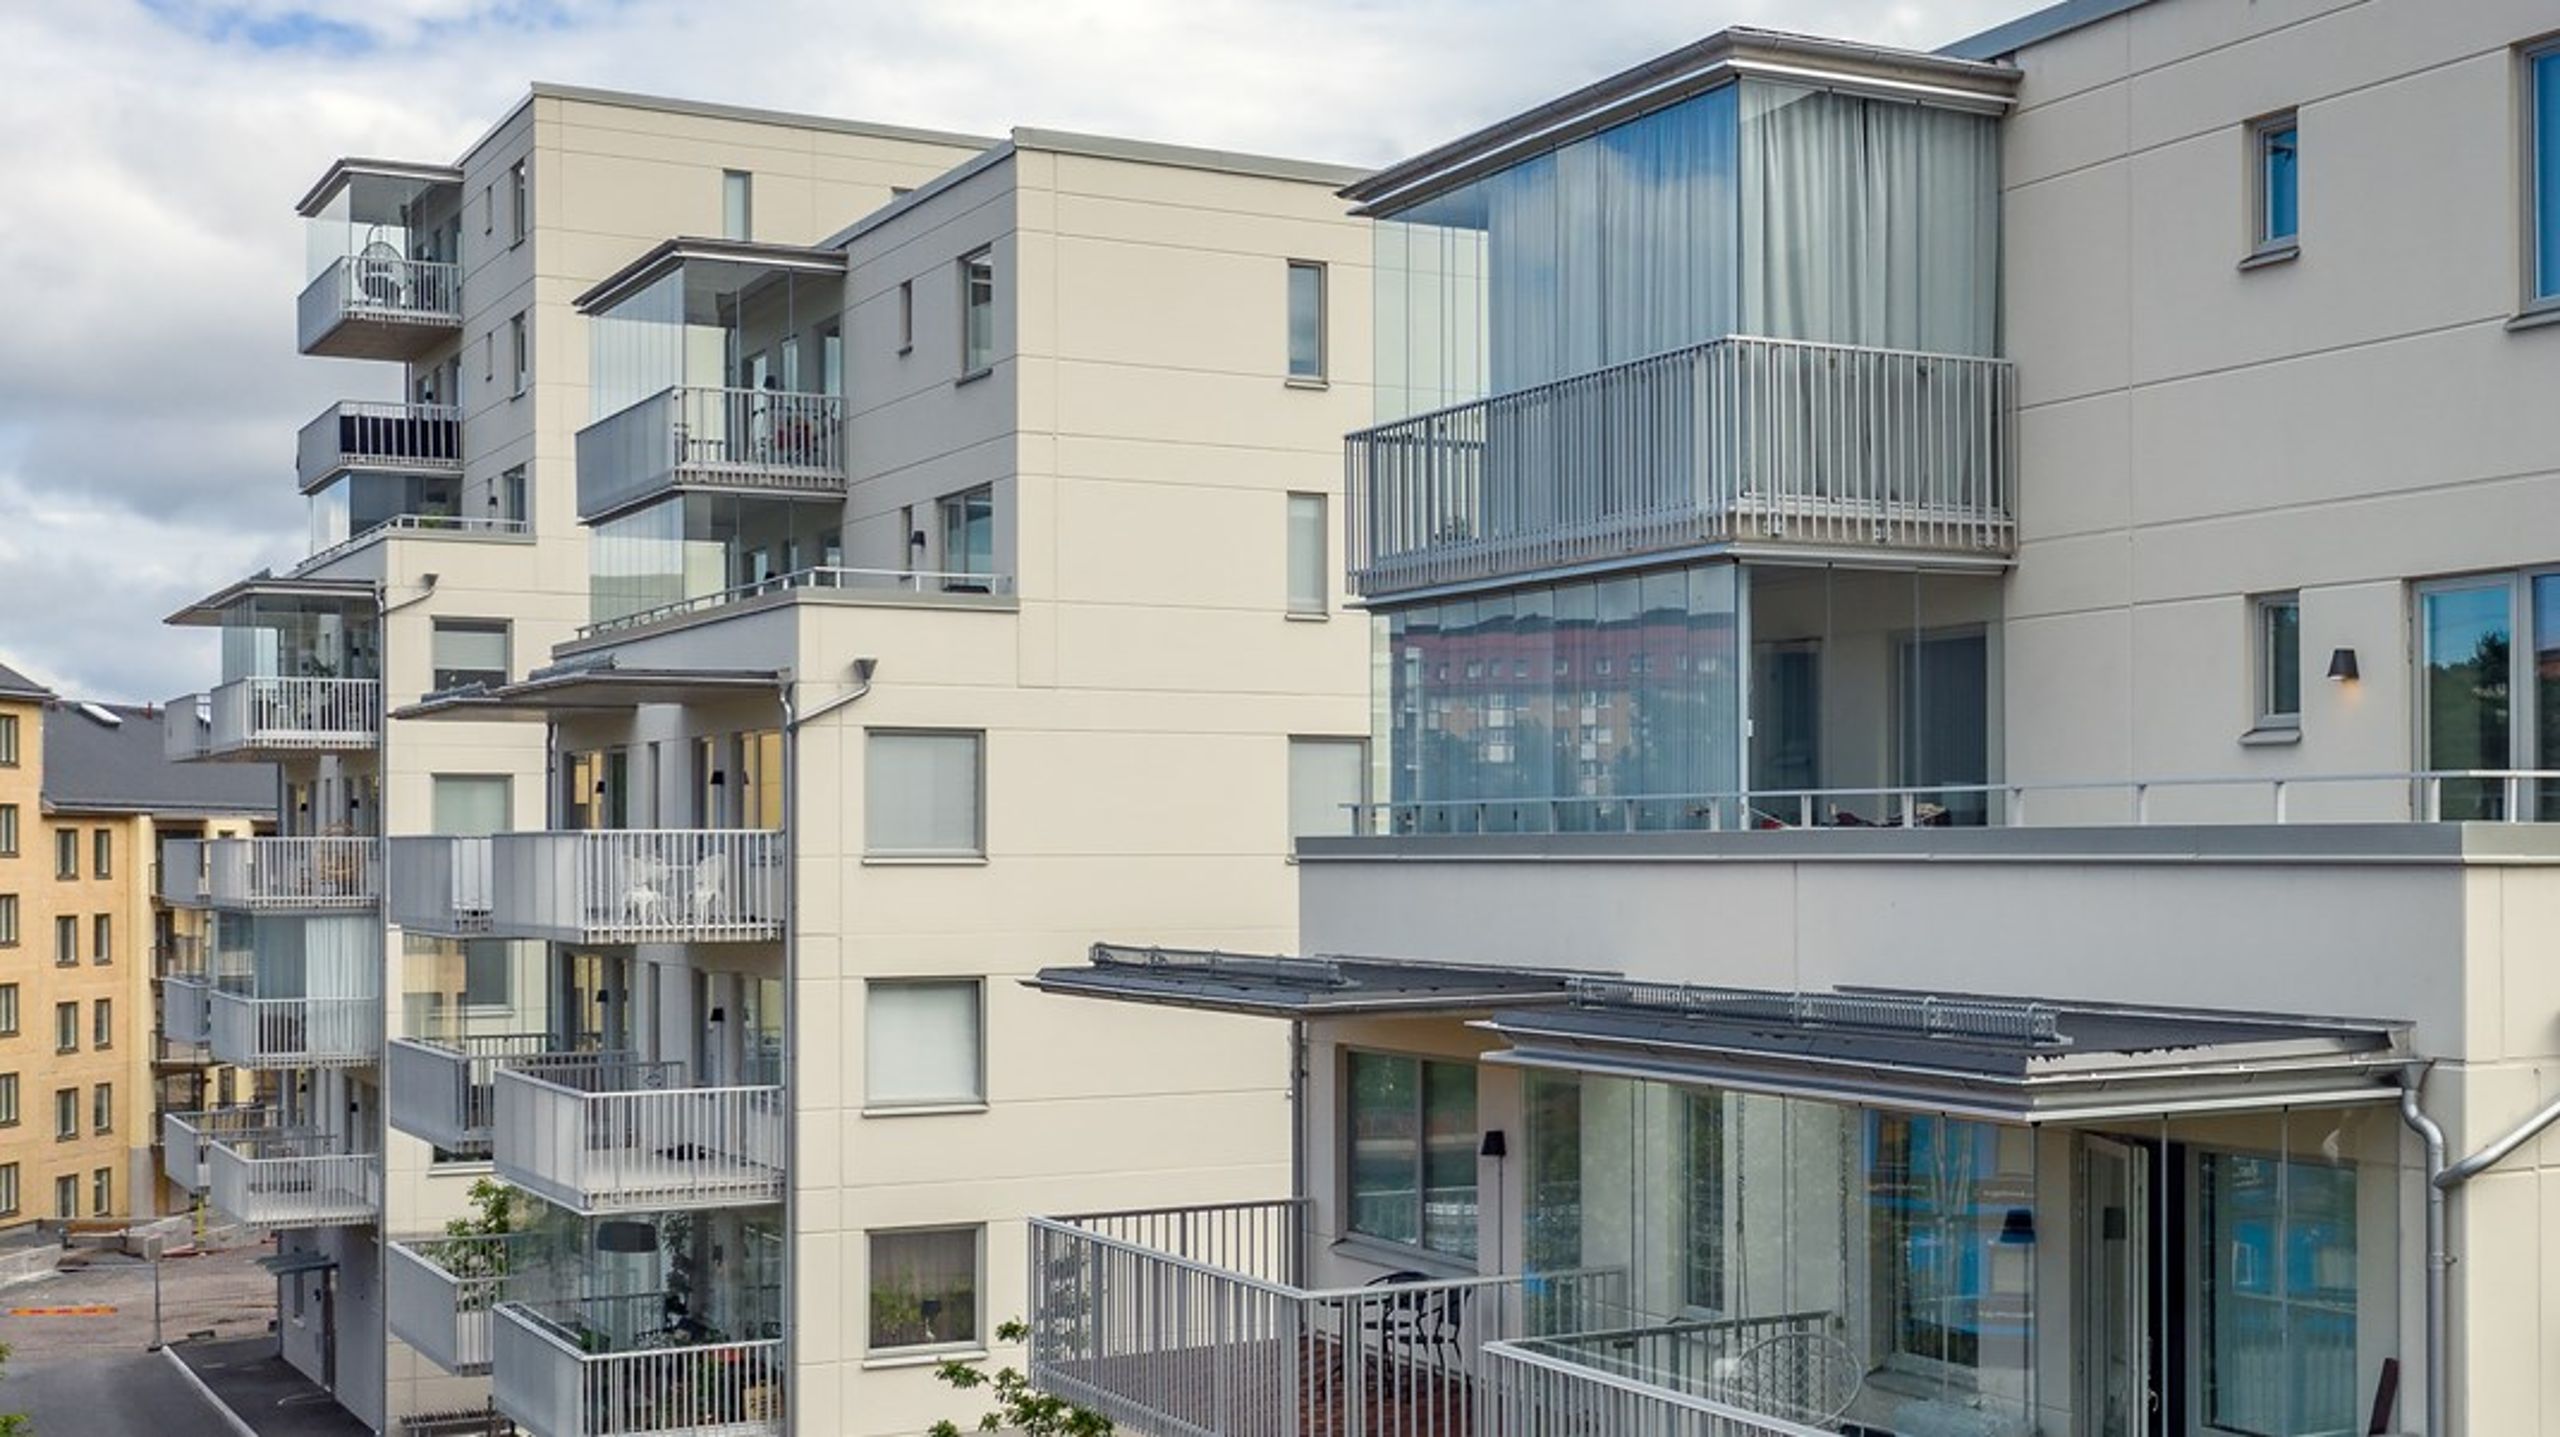 Dagens reglering för inglasning av balkong är både omständlig och orättvis för landets lägenhetsinnehavare, skriver debattören.